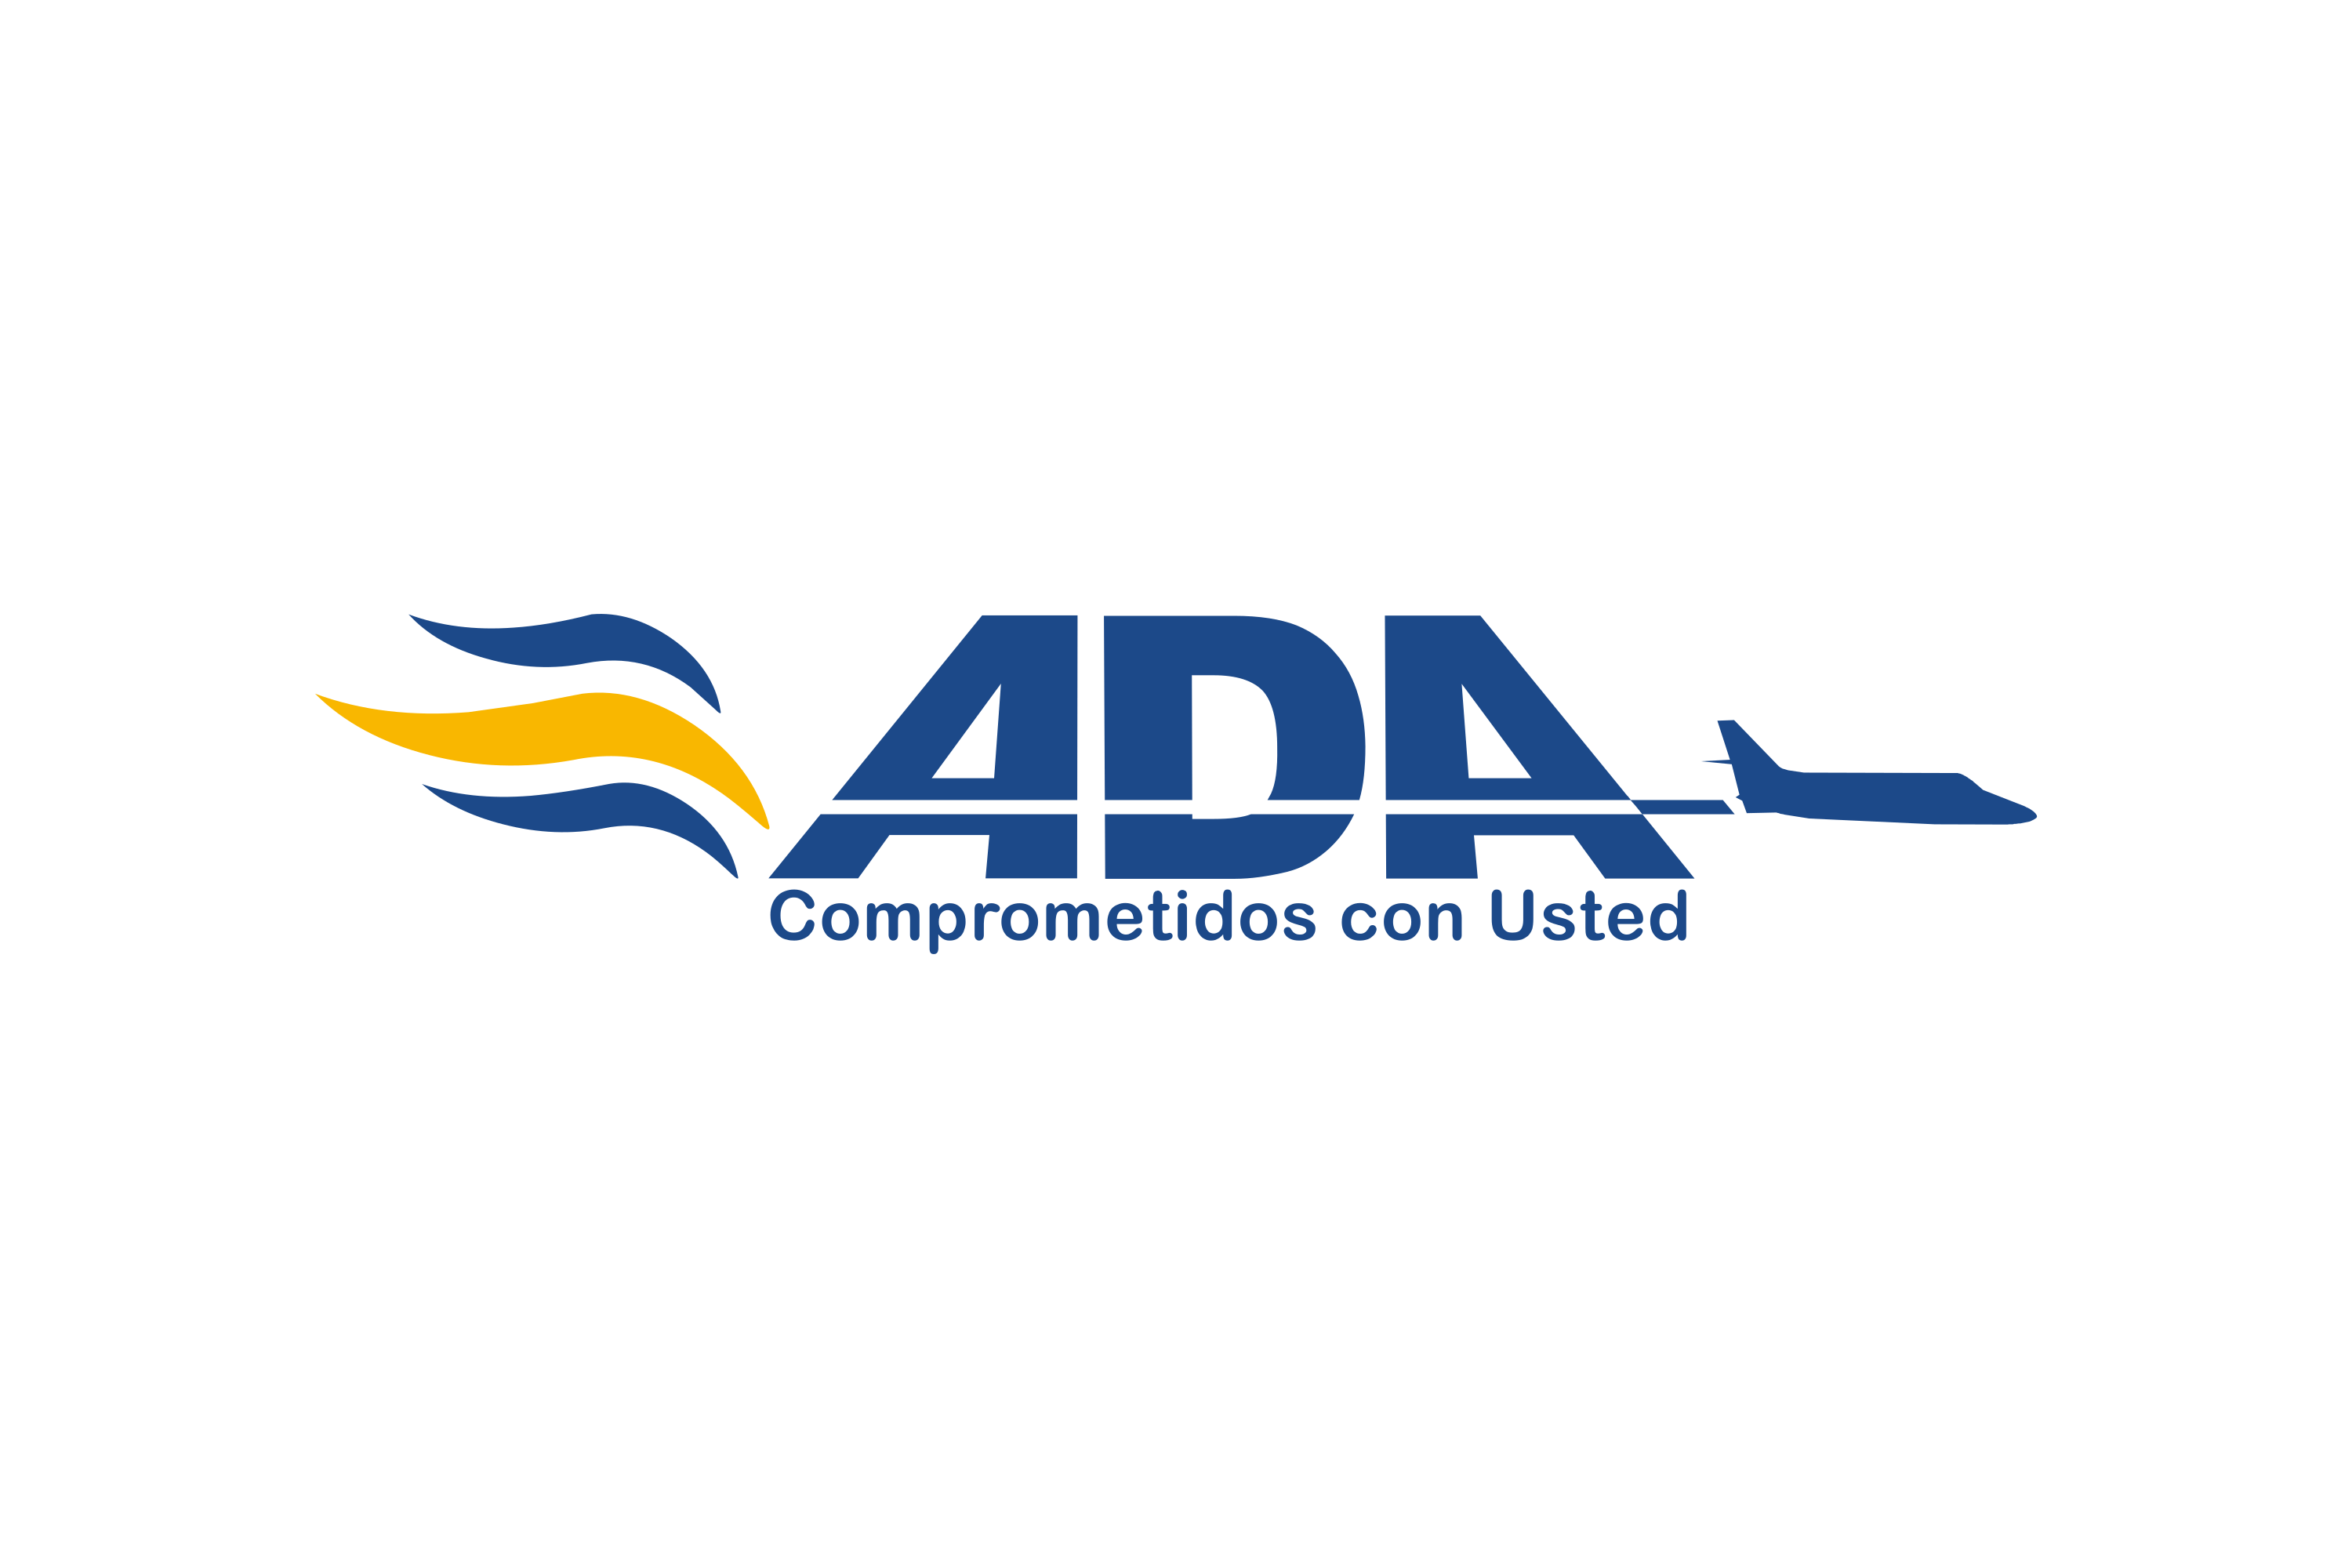 Aerolínea de Antioquia Logo